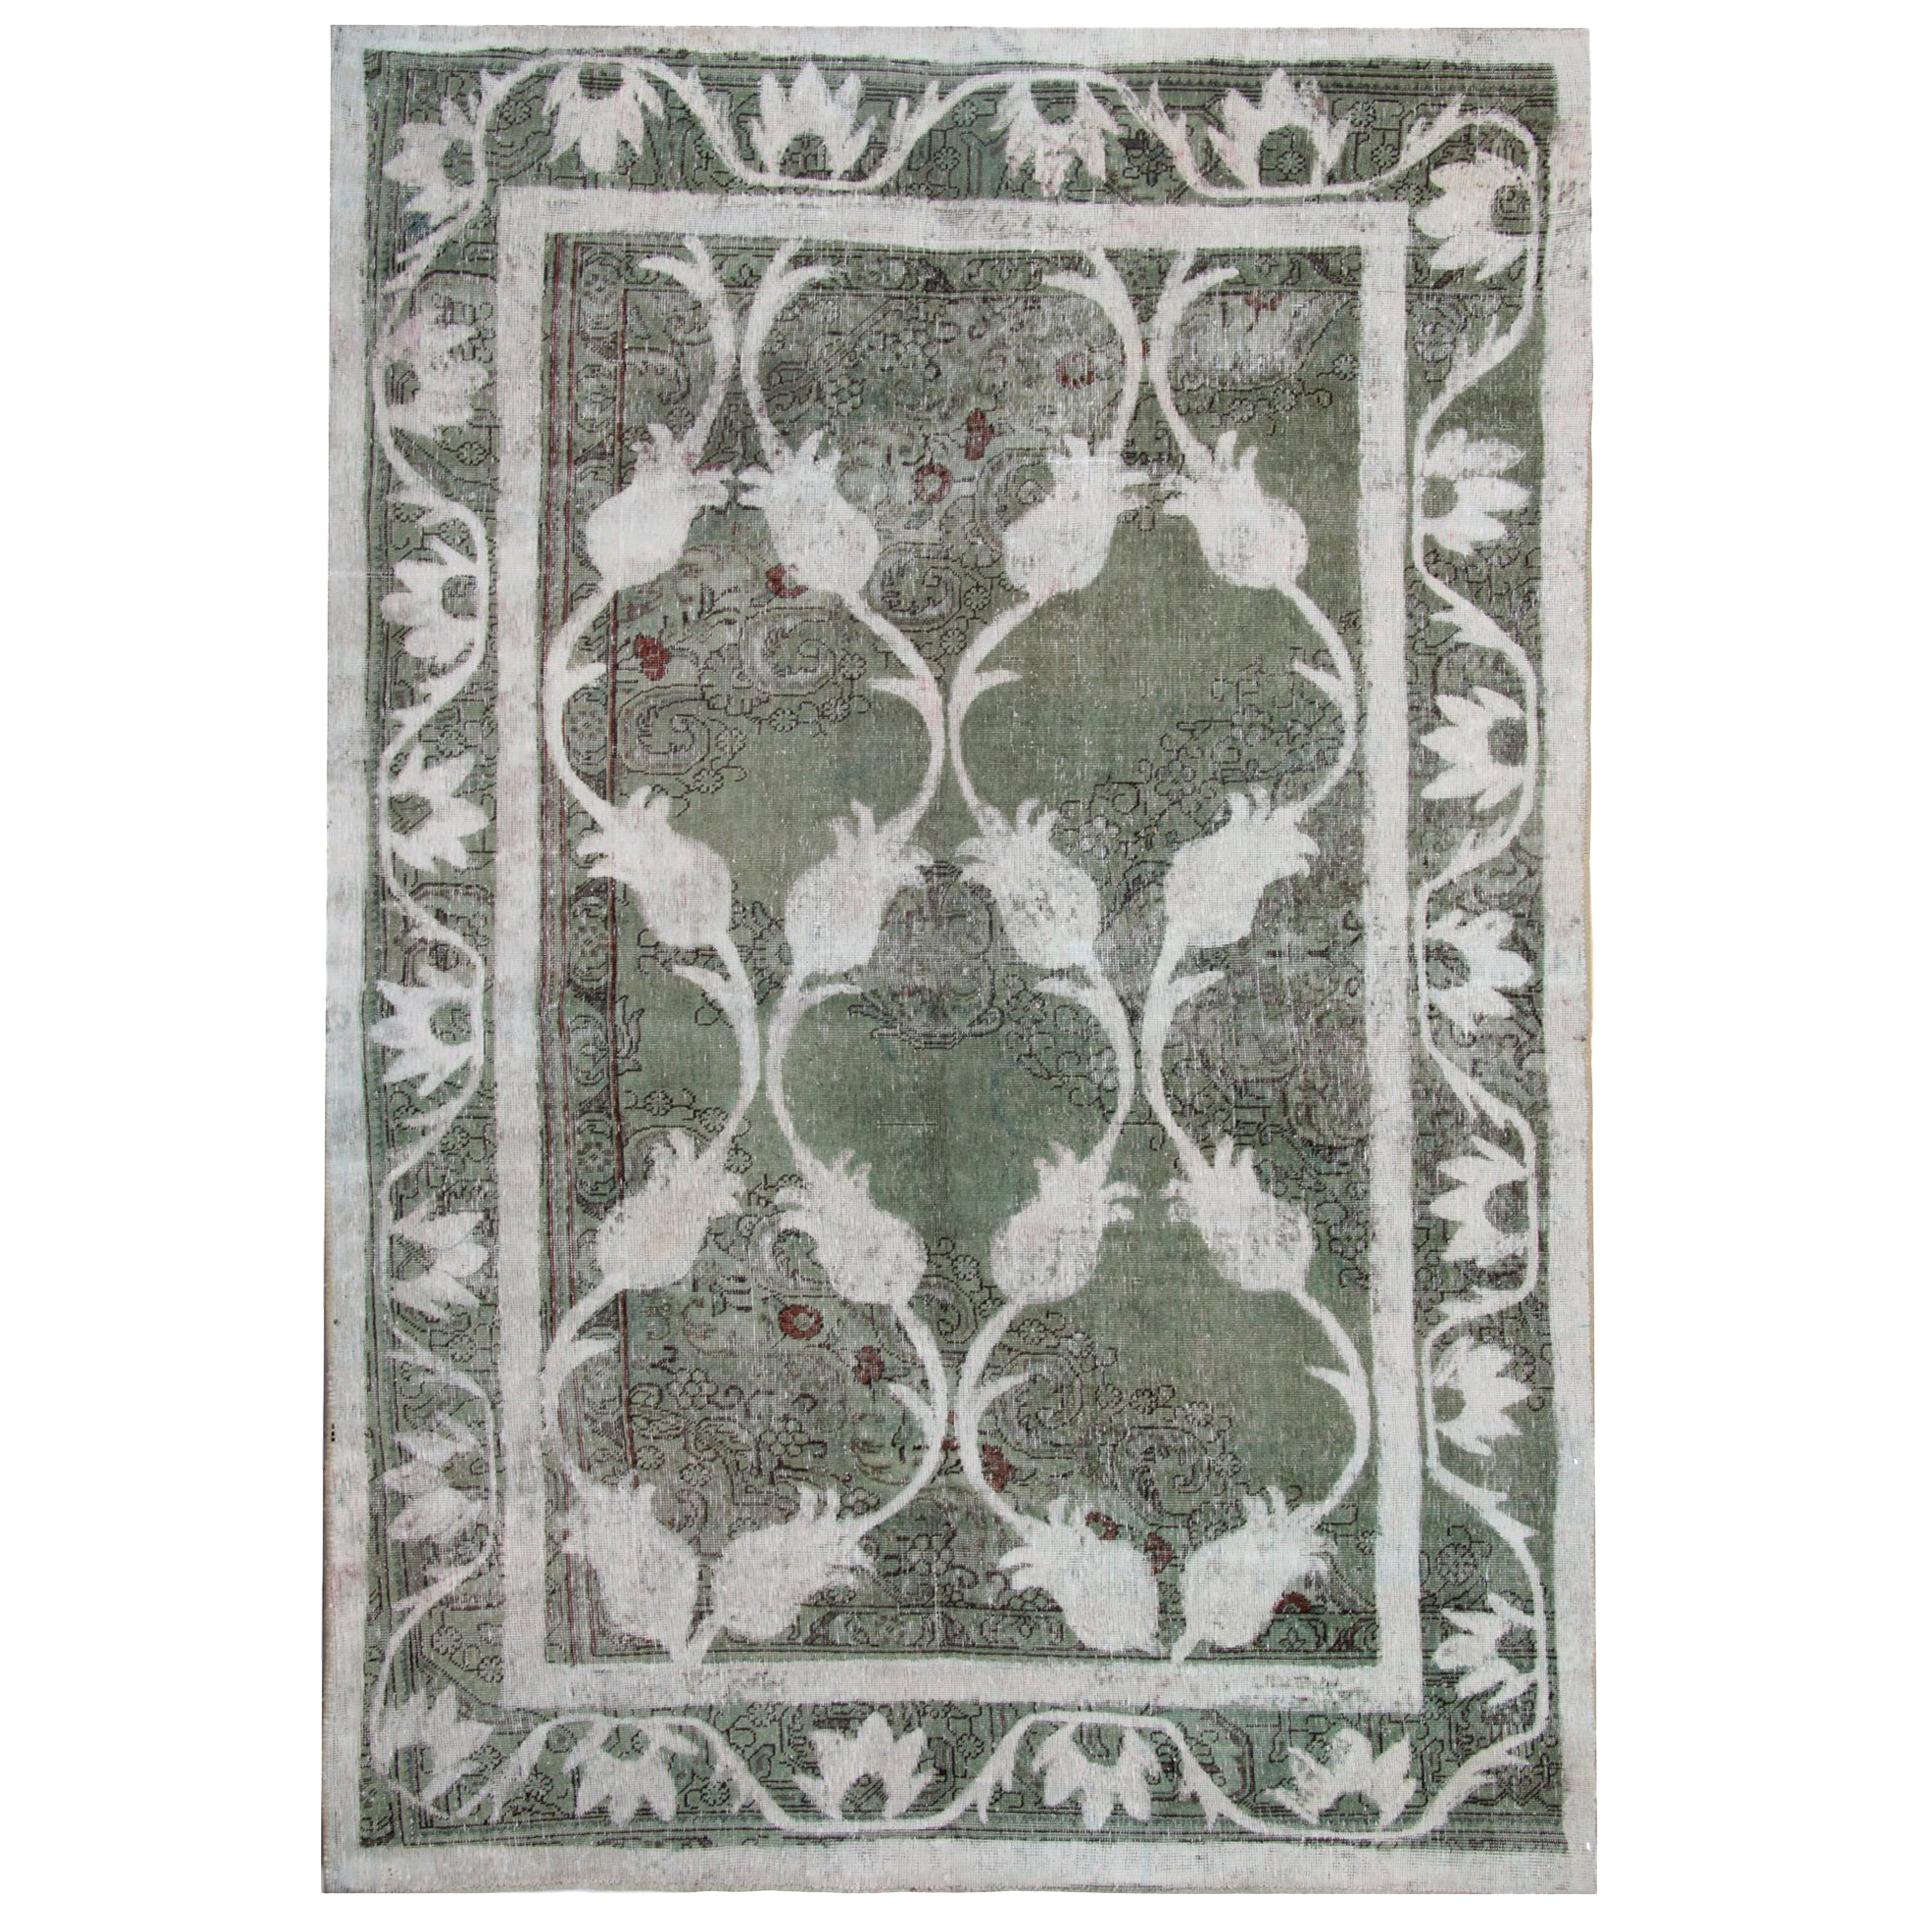 Handgefertigter orientalischer Teppich in Grau und Grün, Türkisch, Vintage